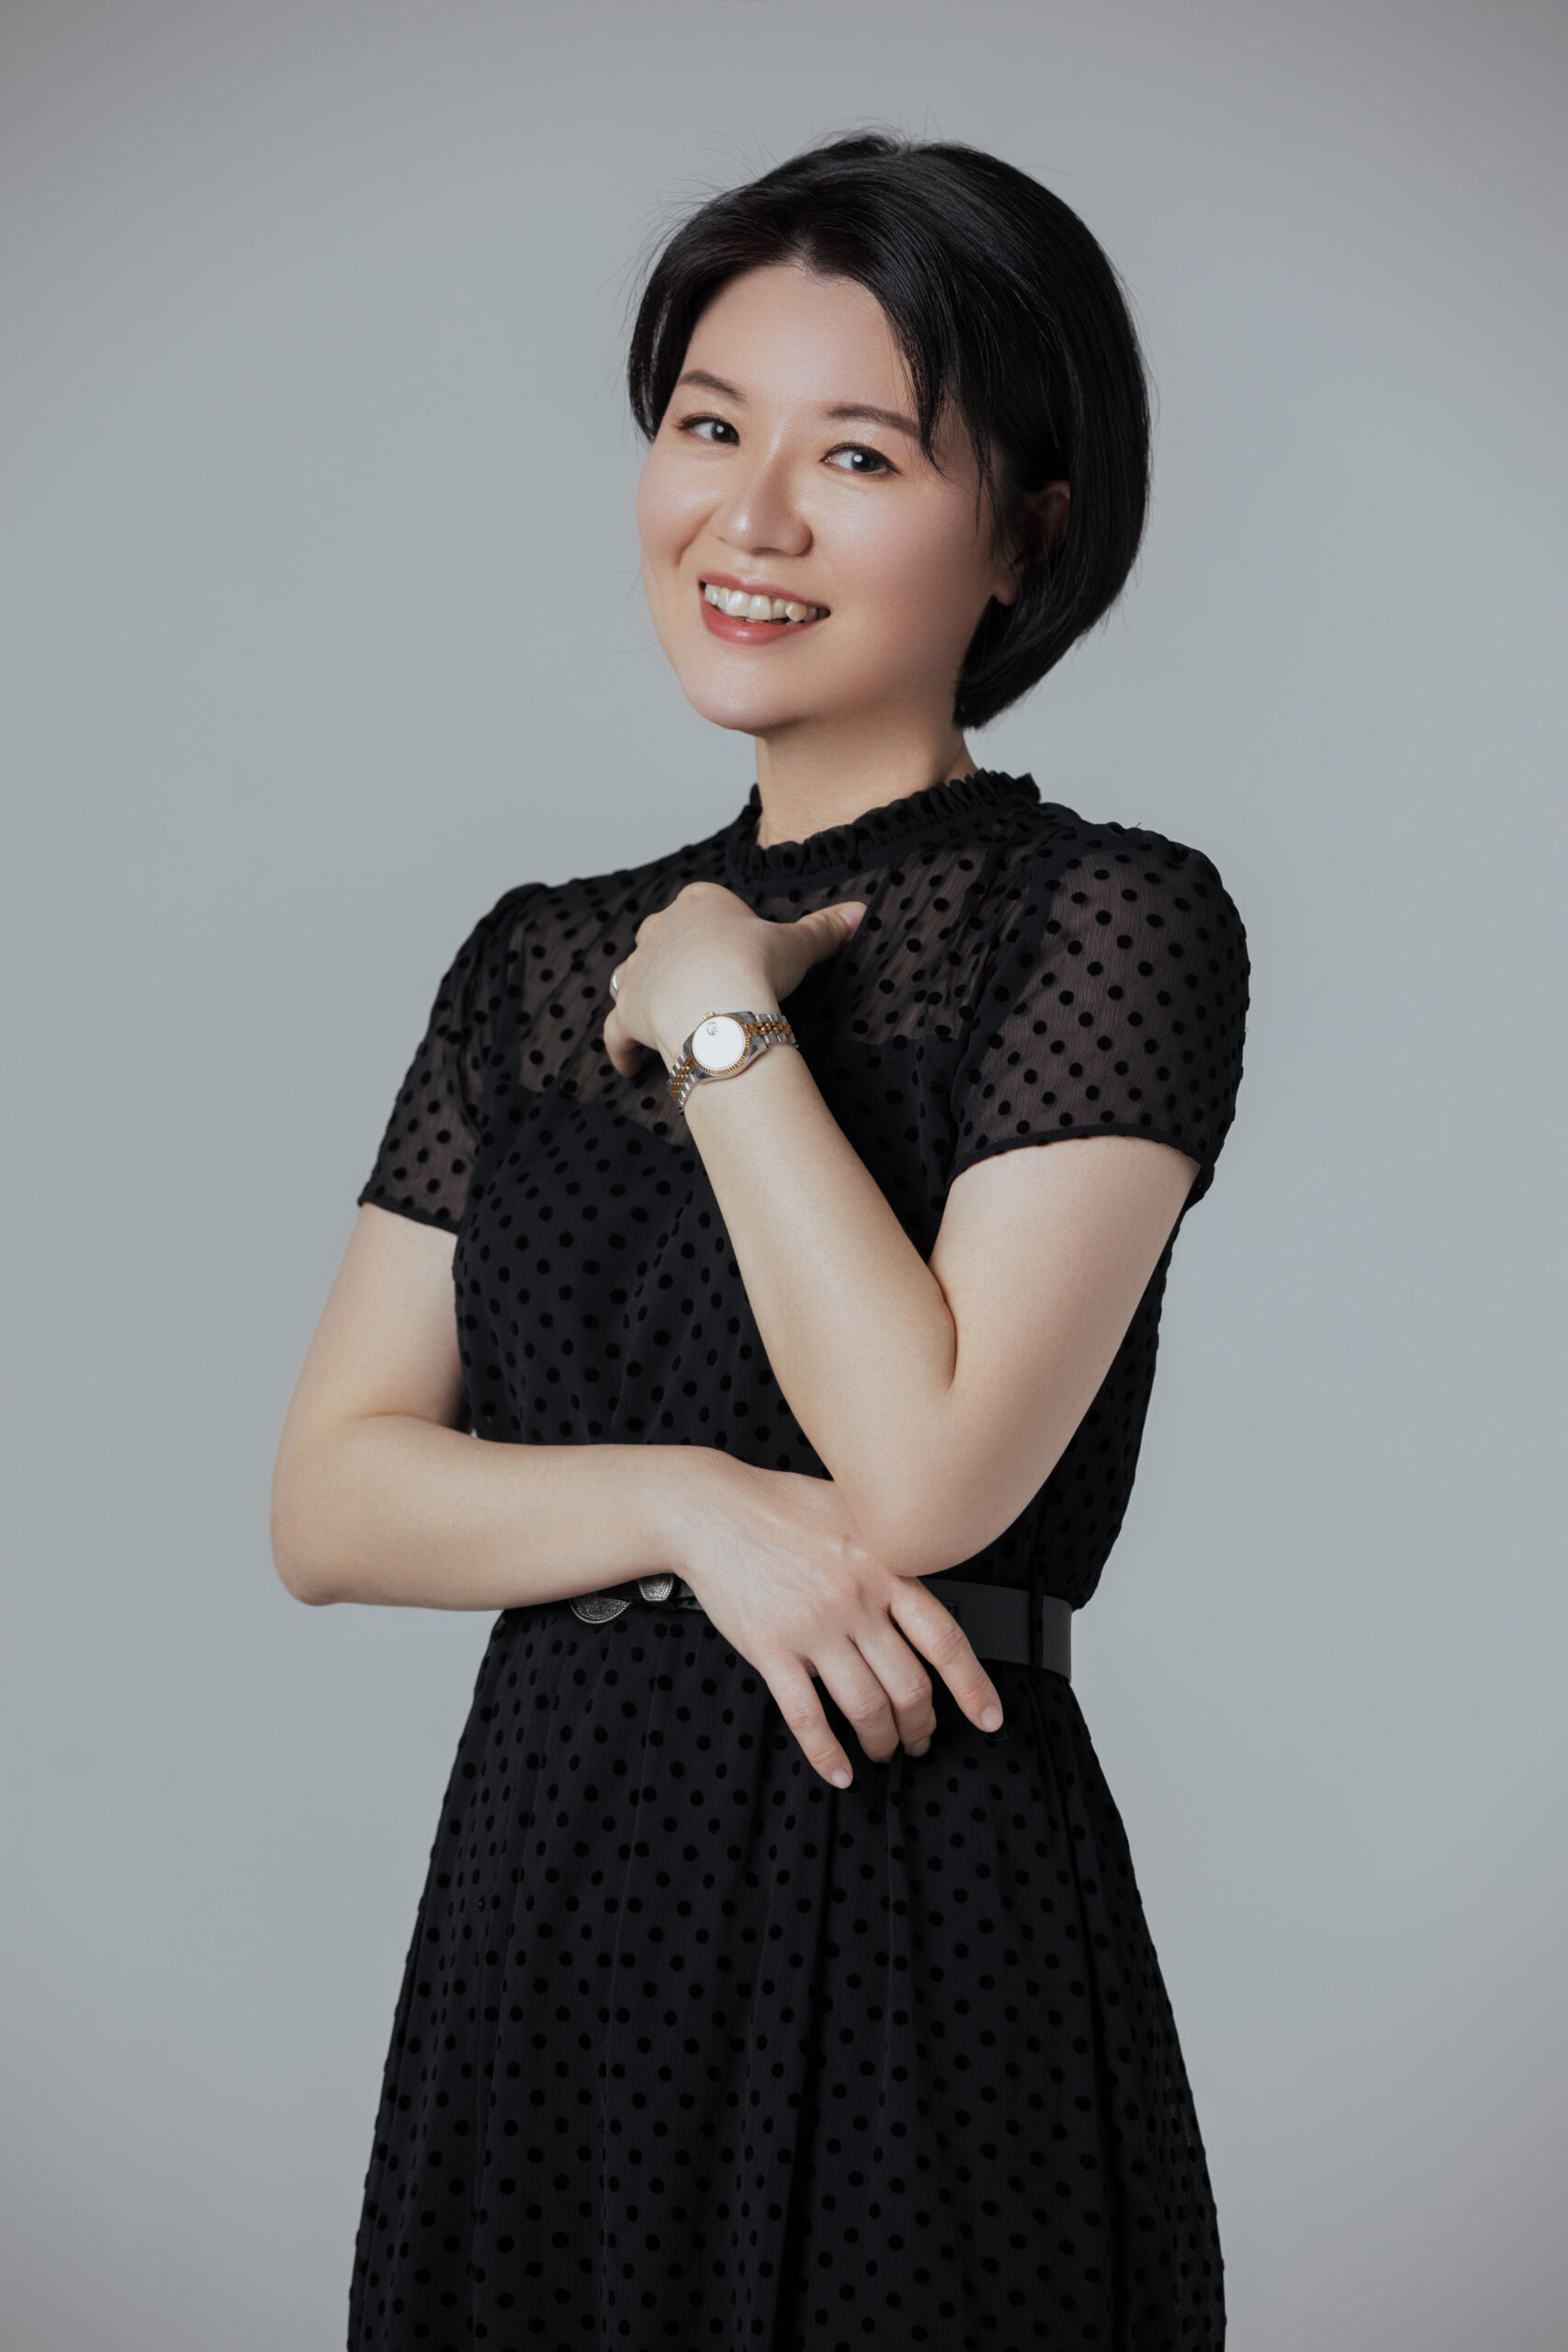 Dr Michelle Tan